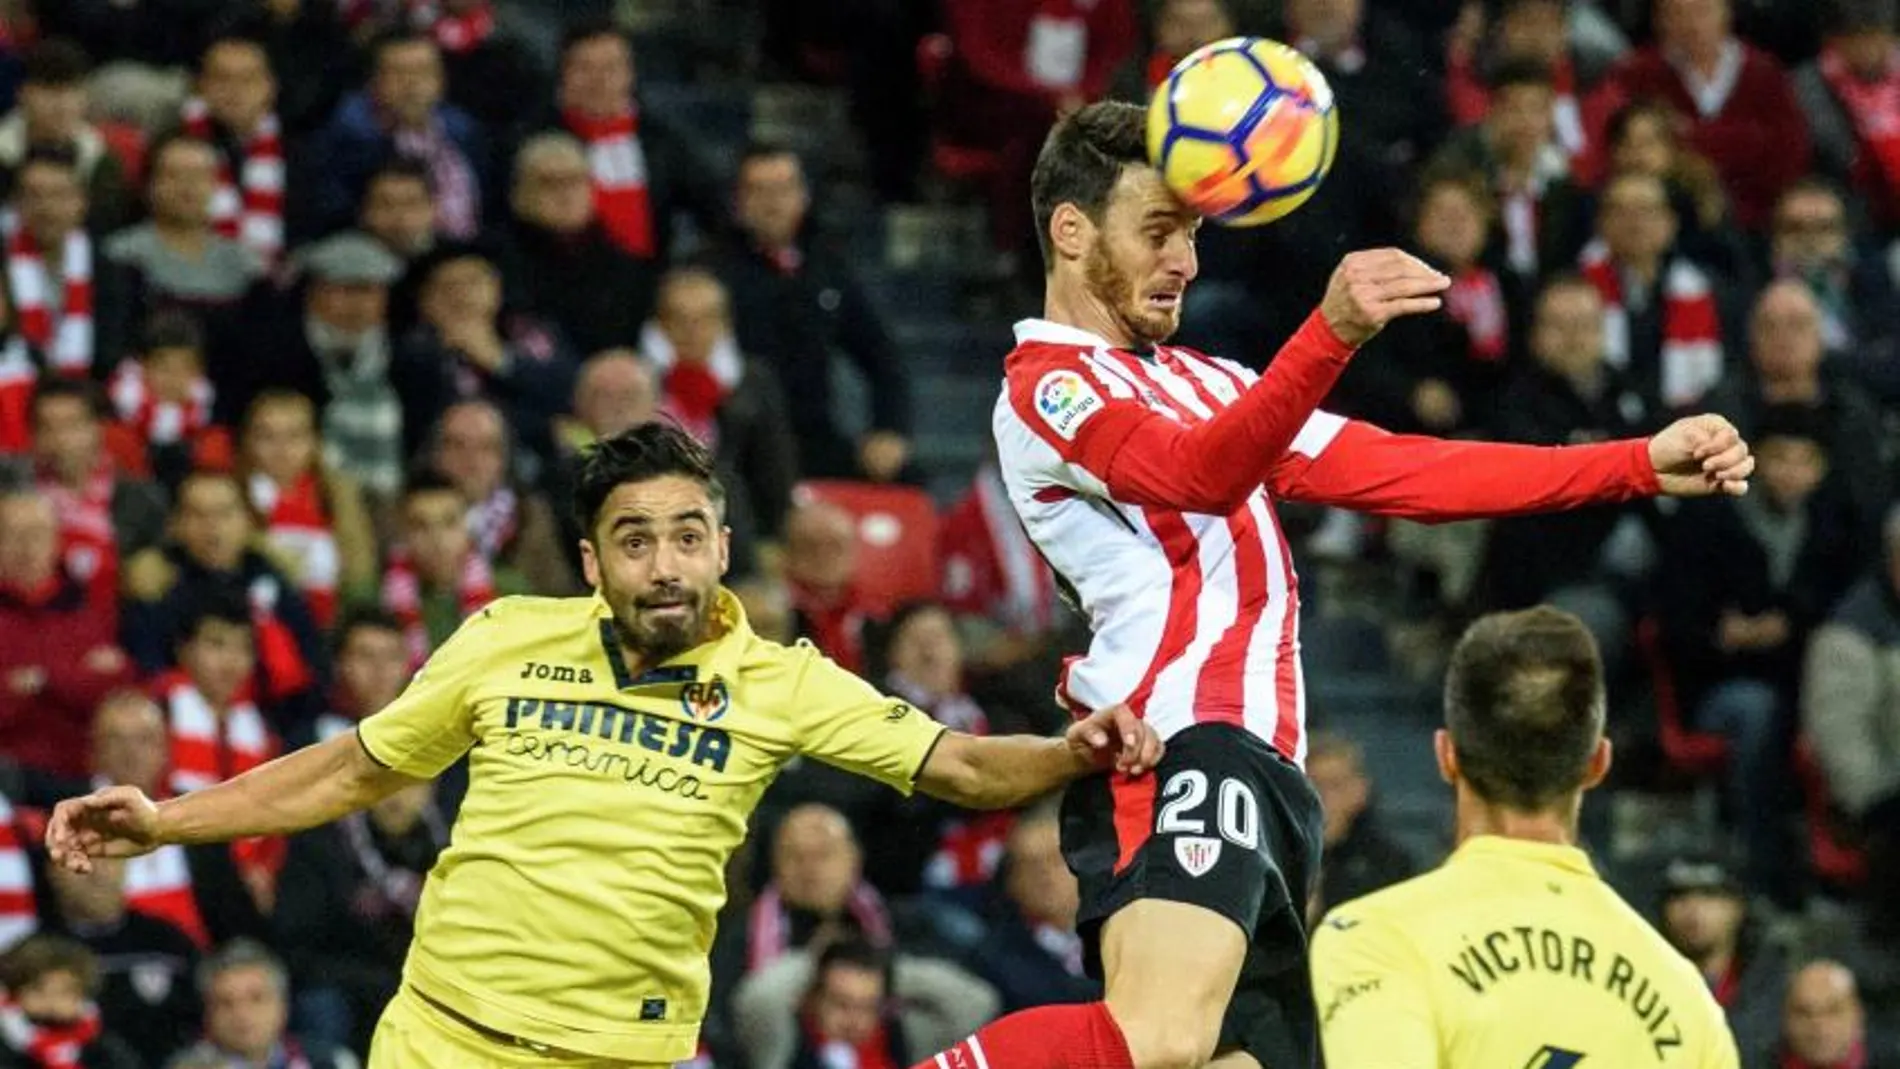 Aduriz cabecea un balón entre Jaume Costa y Víctor Ruiz, ambos del Villarreal